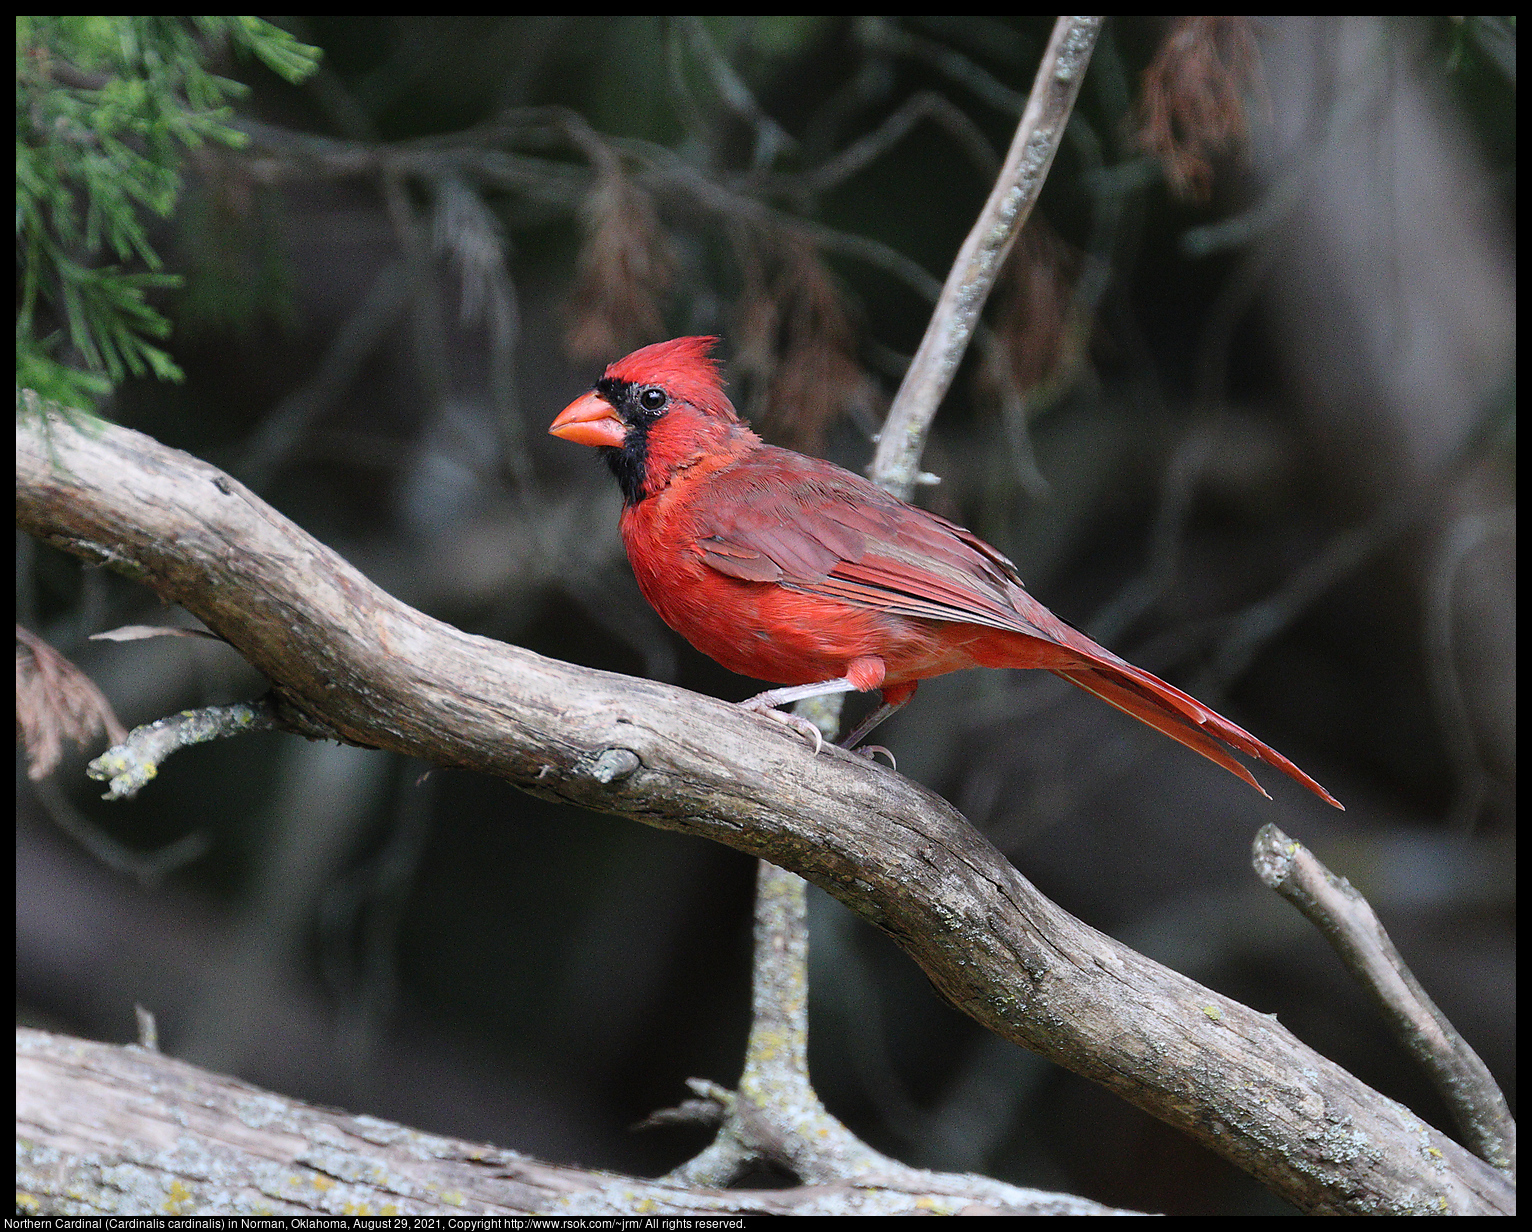 Northern Cardinal (Cardinalis cardinalis) in Norman, Oklahoma, August 29, 2021